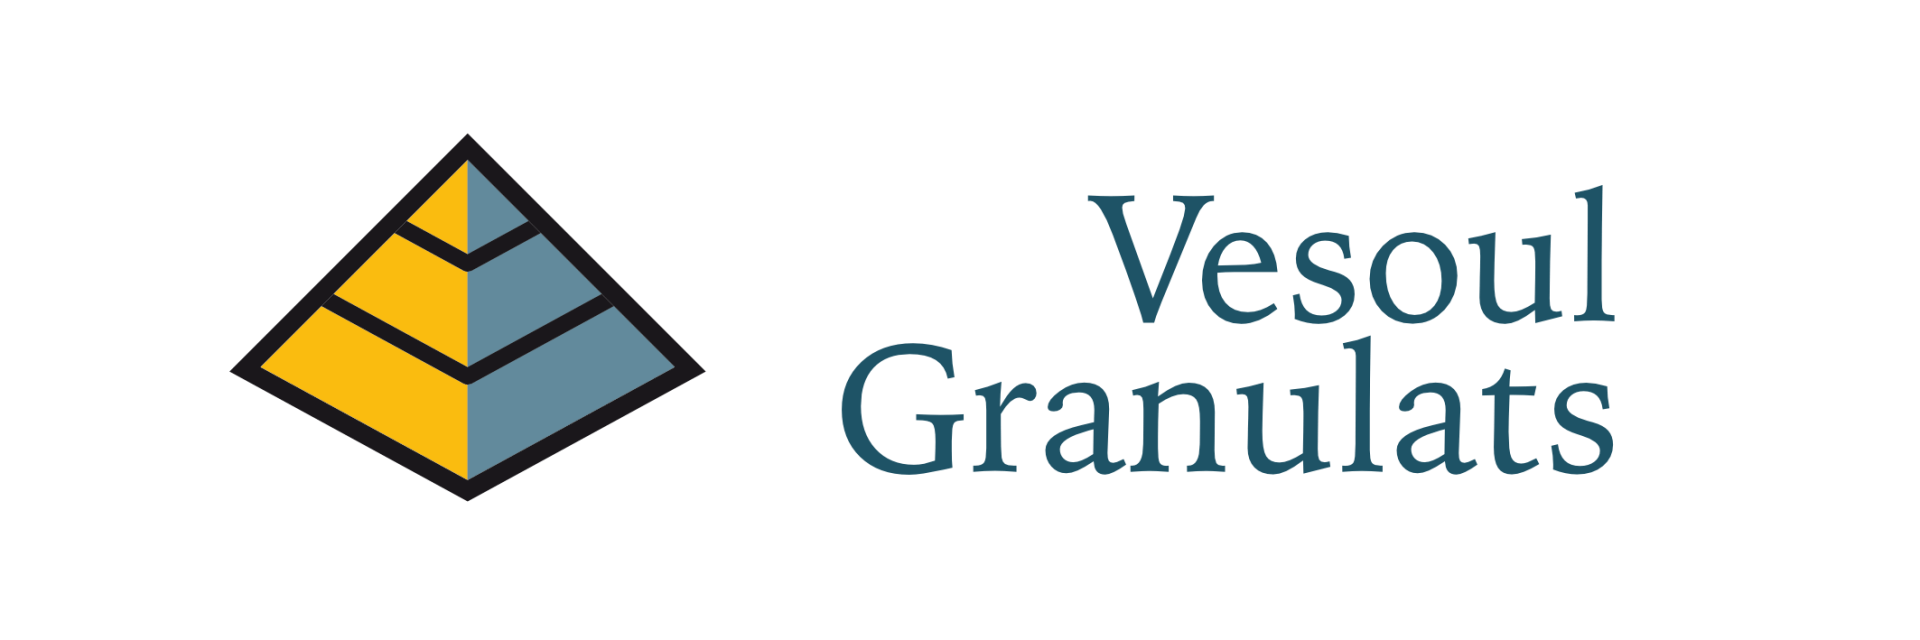 Logo Vesoul Granulats